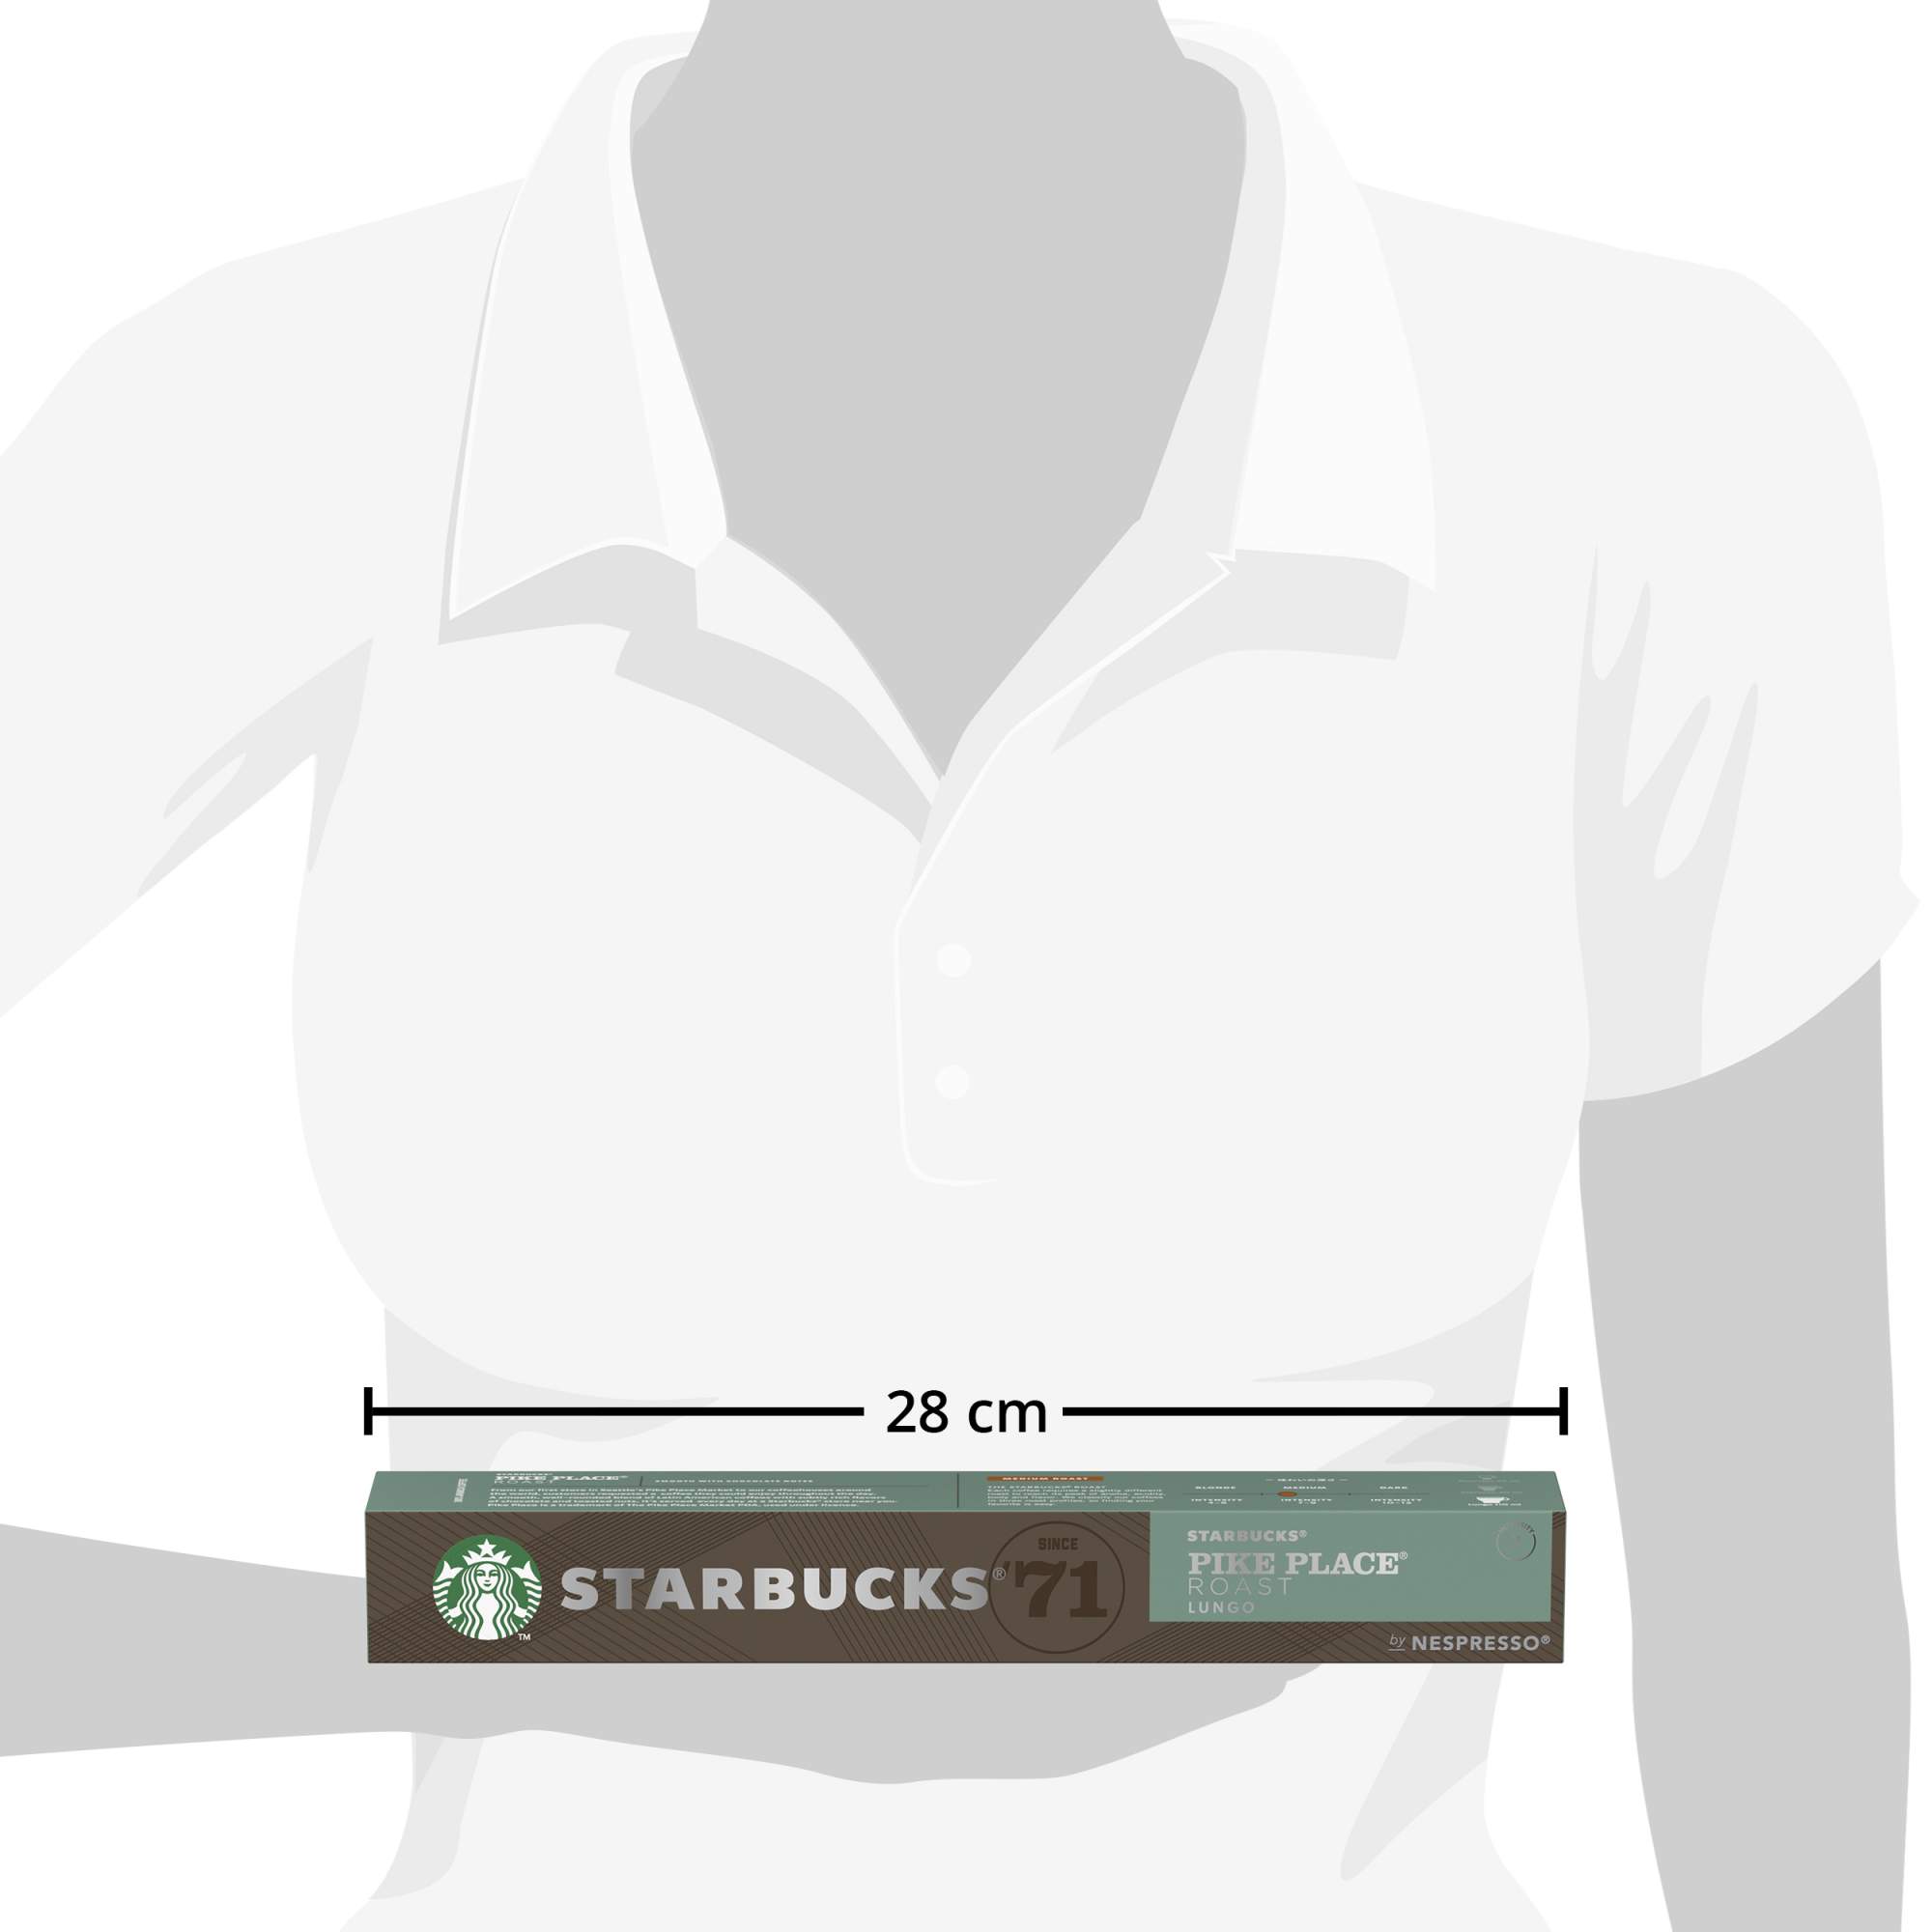 Кофе в капсулах Starbucks Pike Place Roast стандарта Nespresso 10 шт